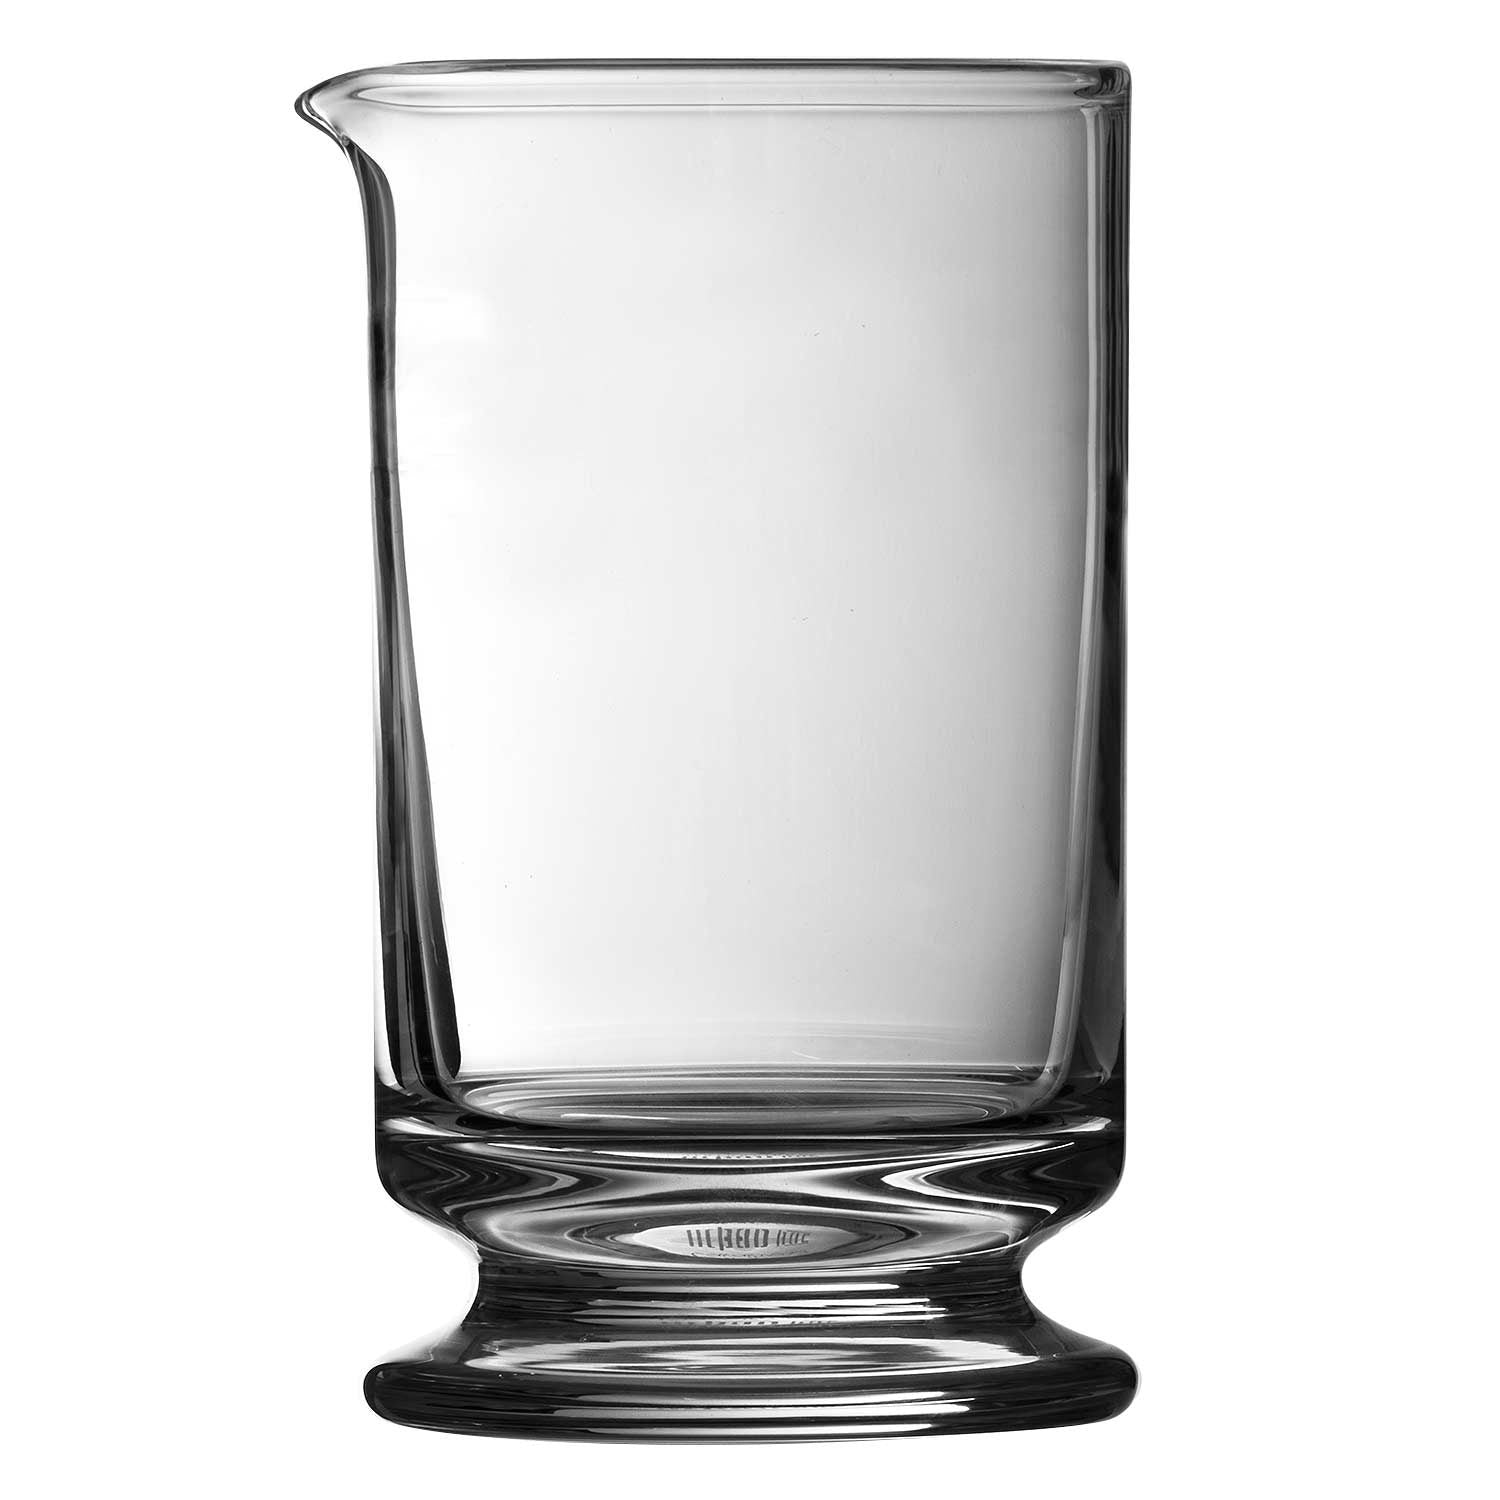 MINI COCKTAILS SIRENA MINI MARTINI GLASS, 3.5 OZ.